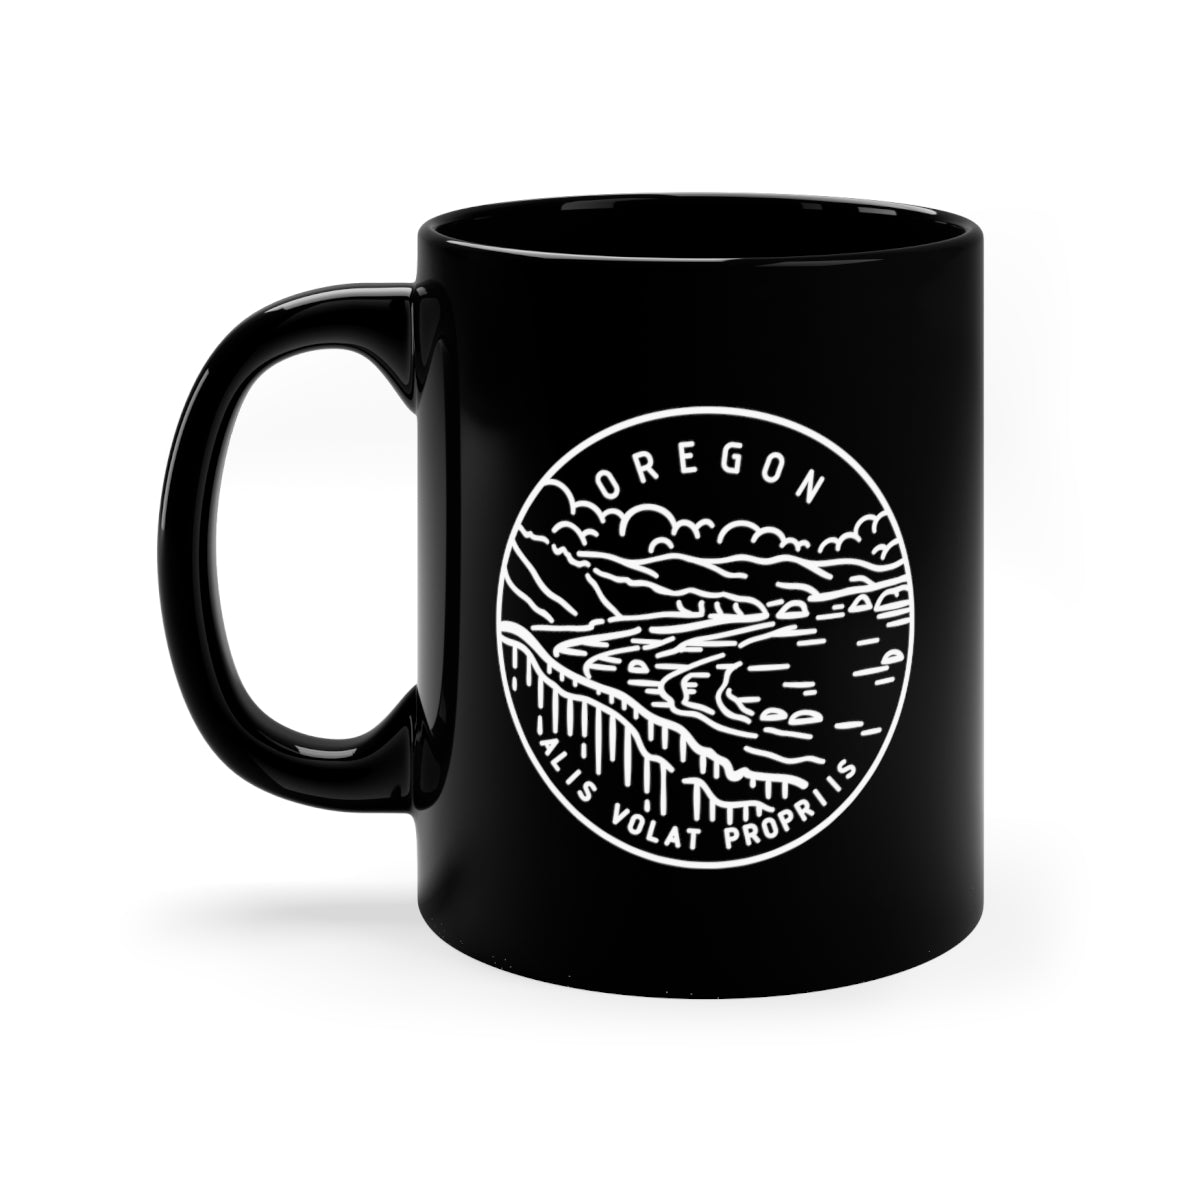 State of Oregon Ceramic Mug 11oz - The Northwest Store